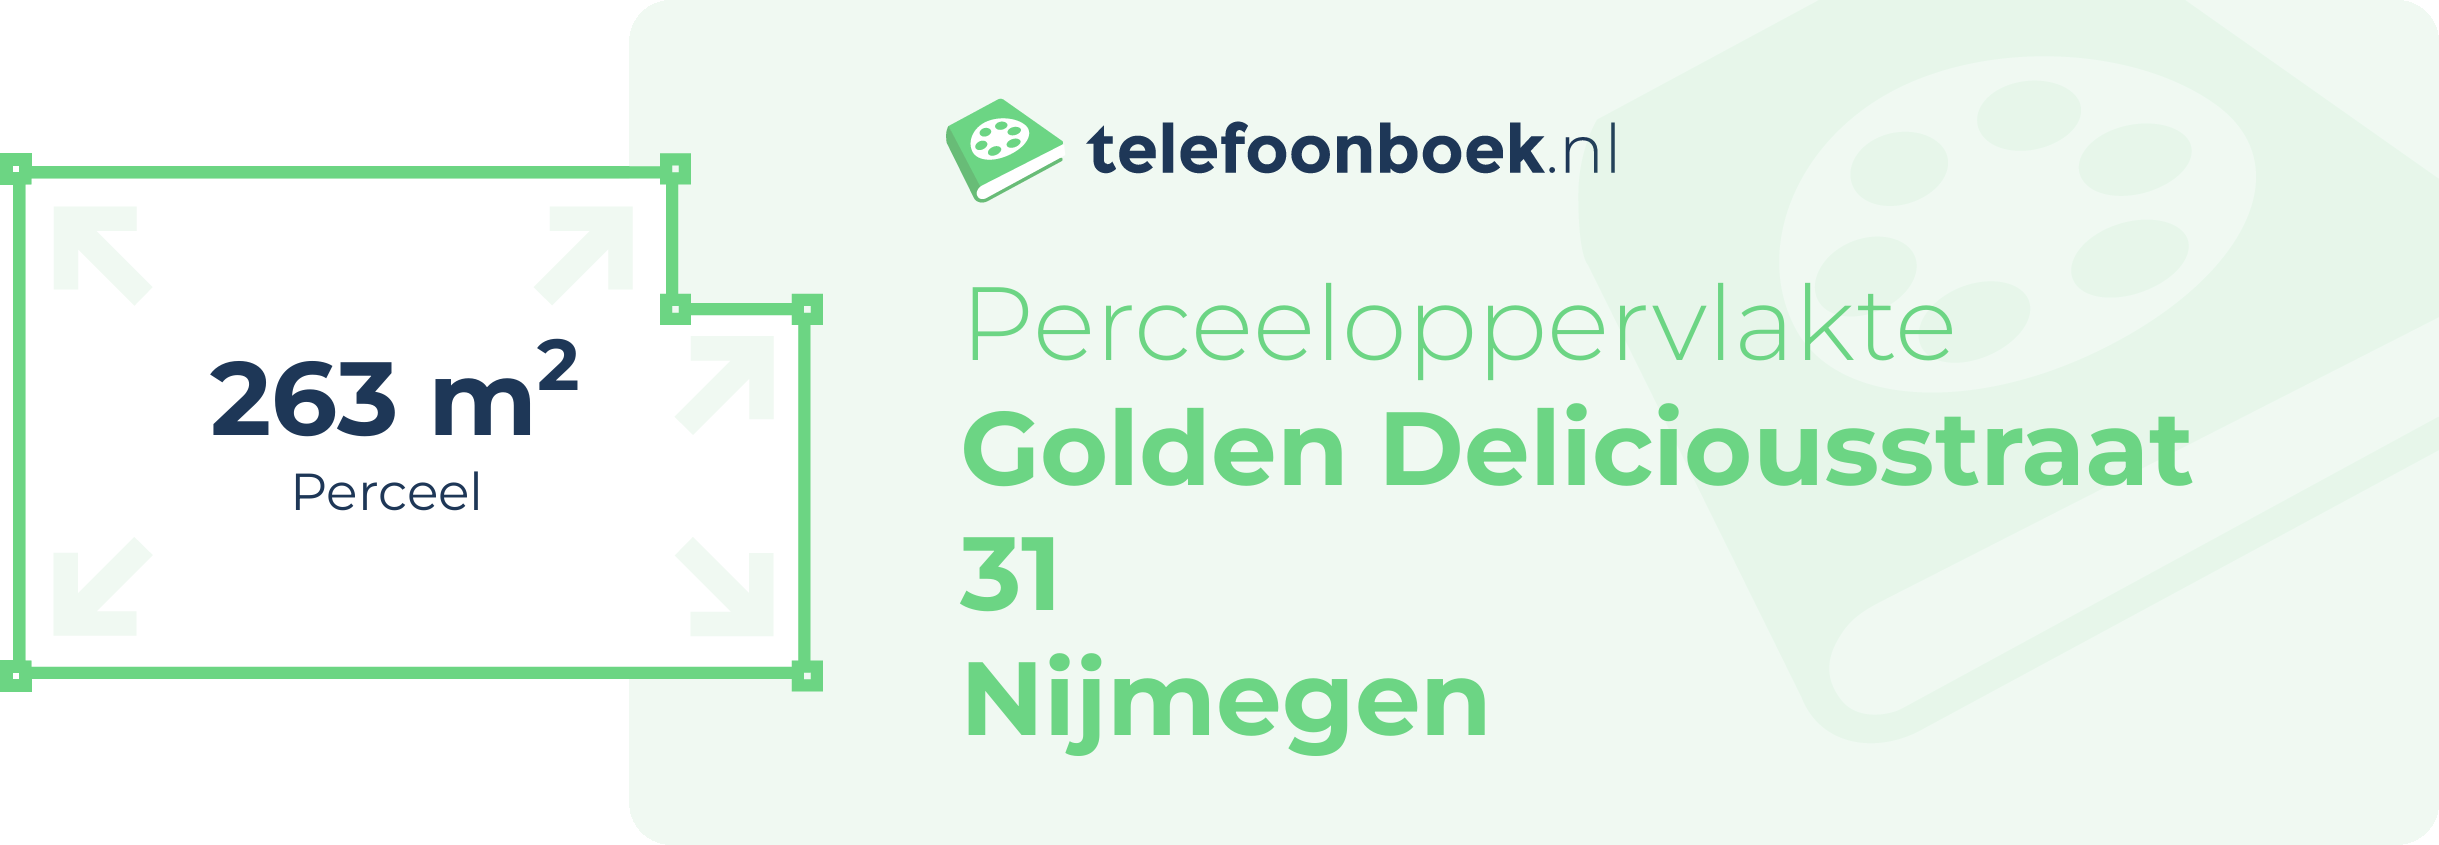 Perceeloppervlakte Golden Deliciousstraat 31 Nijmegen